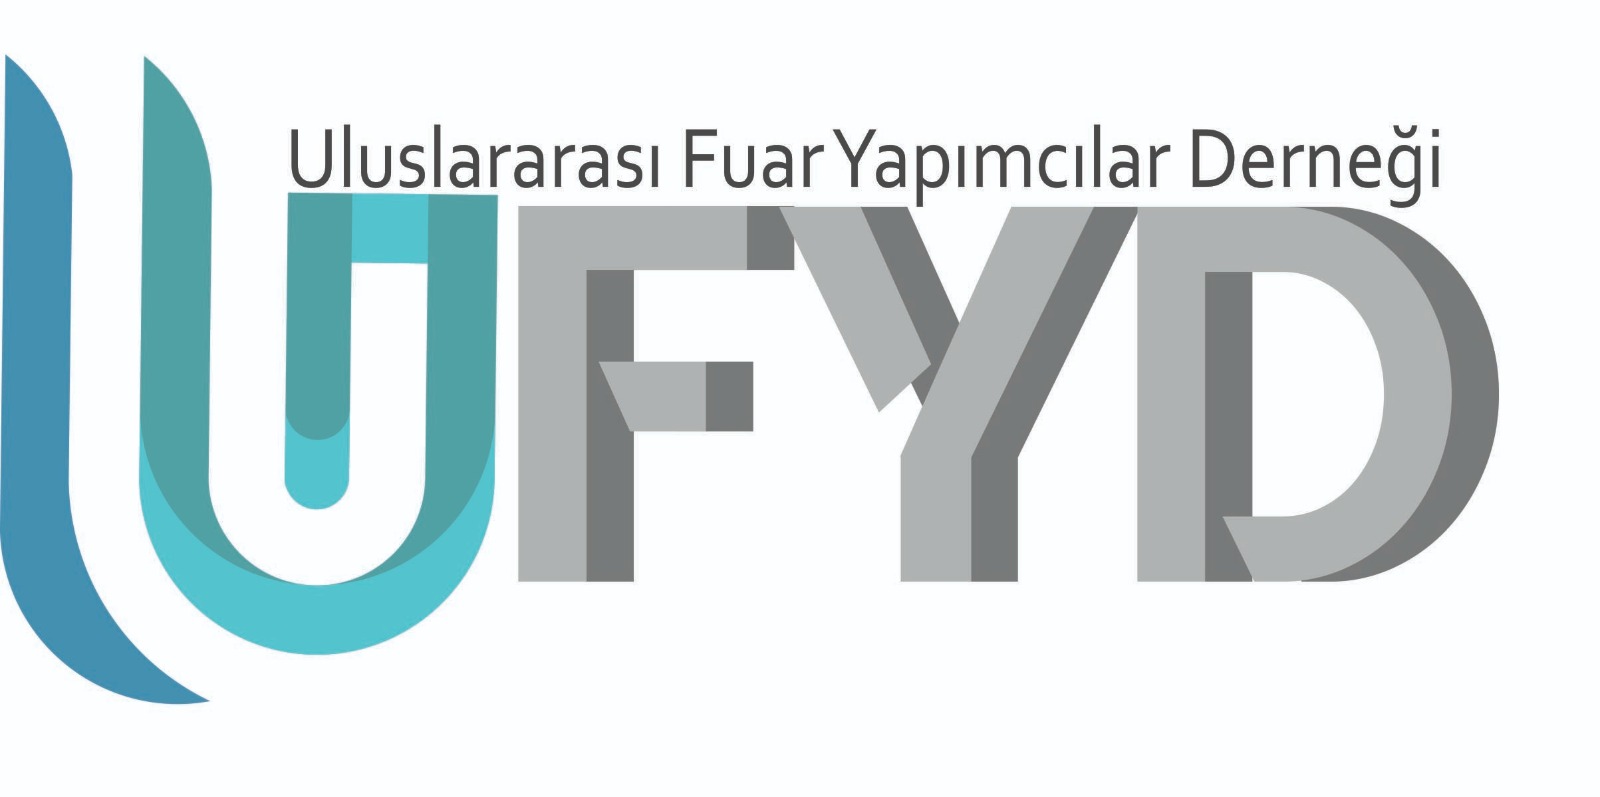 UFYD - Uluslararası Fuar Yapımcıları Derneği